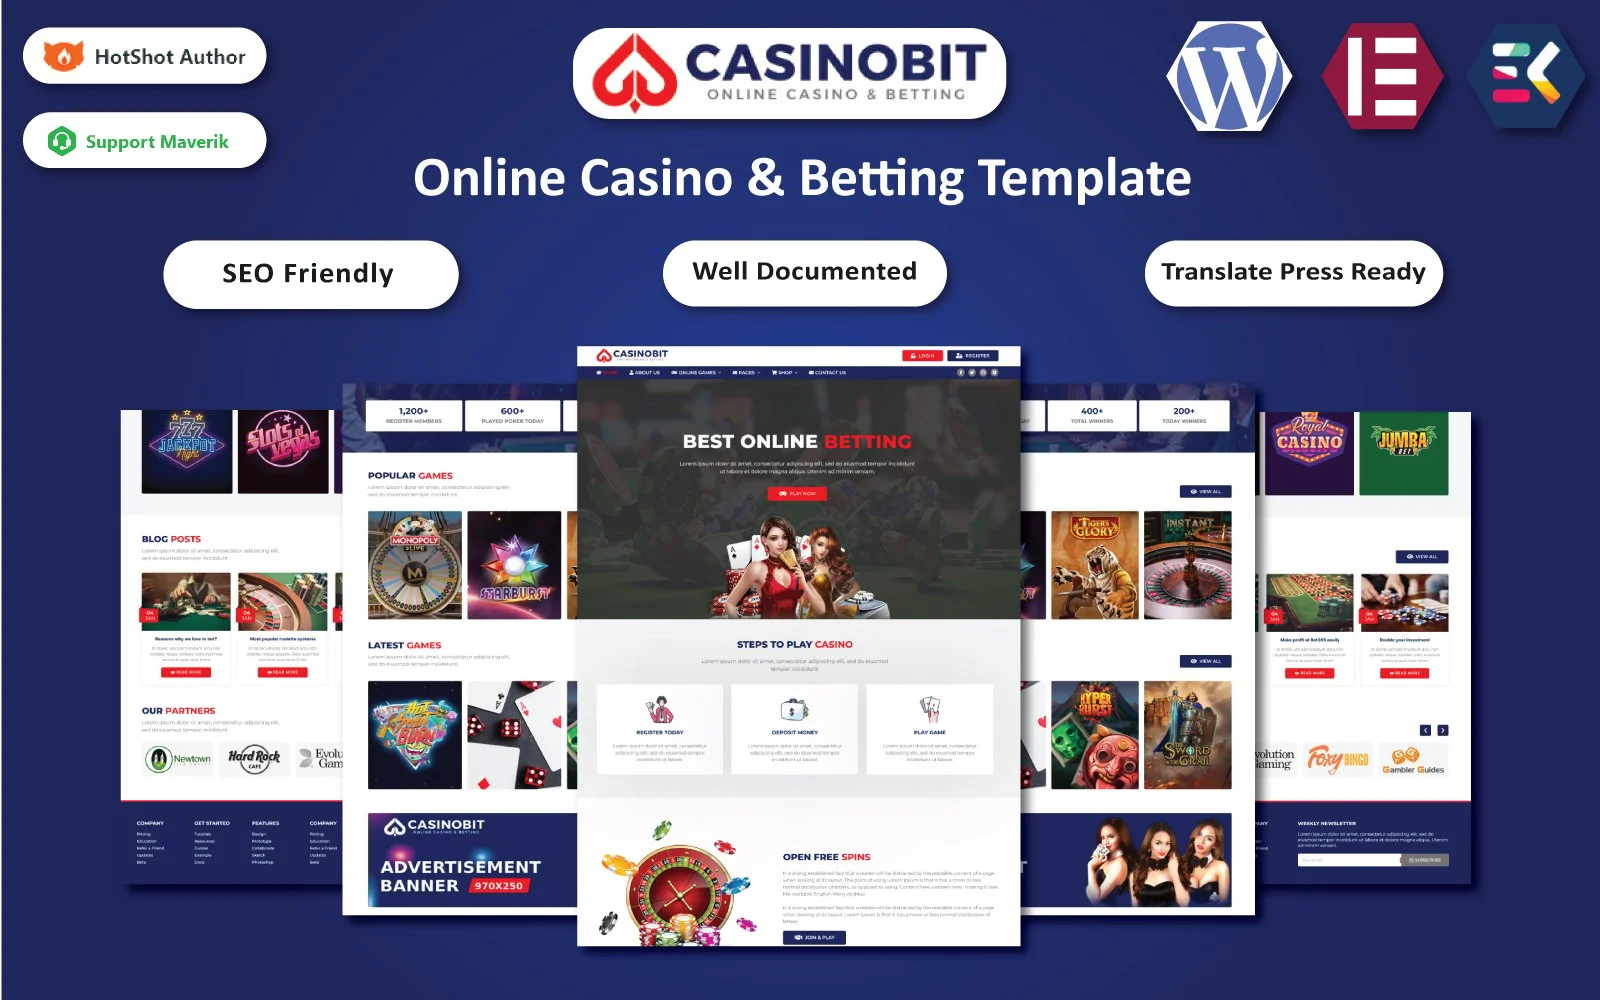 Casino Bit – Online Casino & Betting